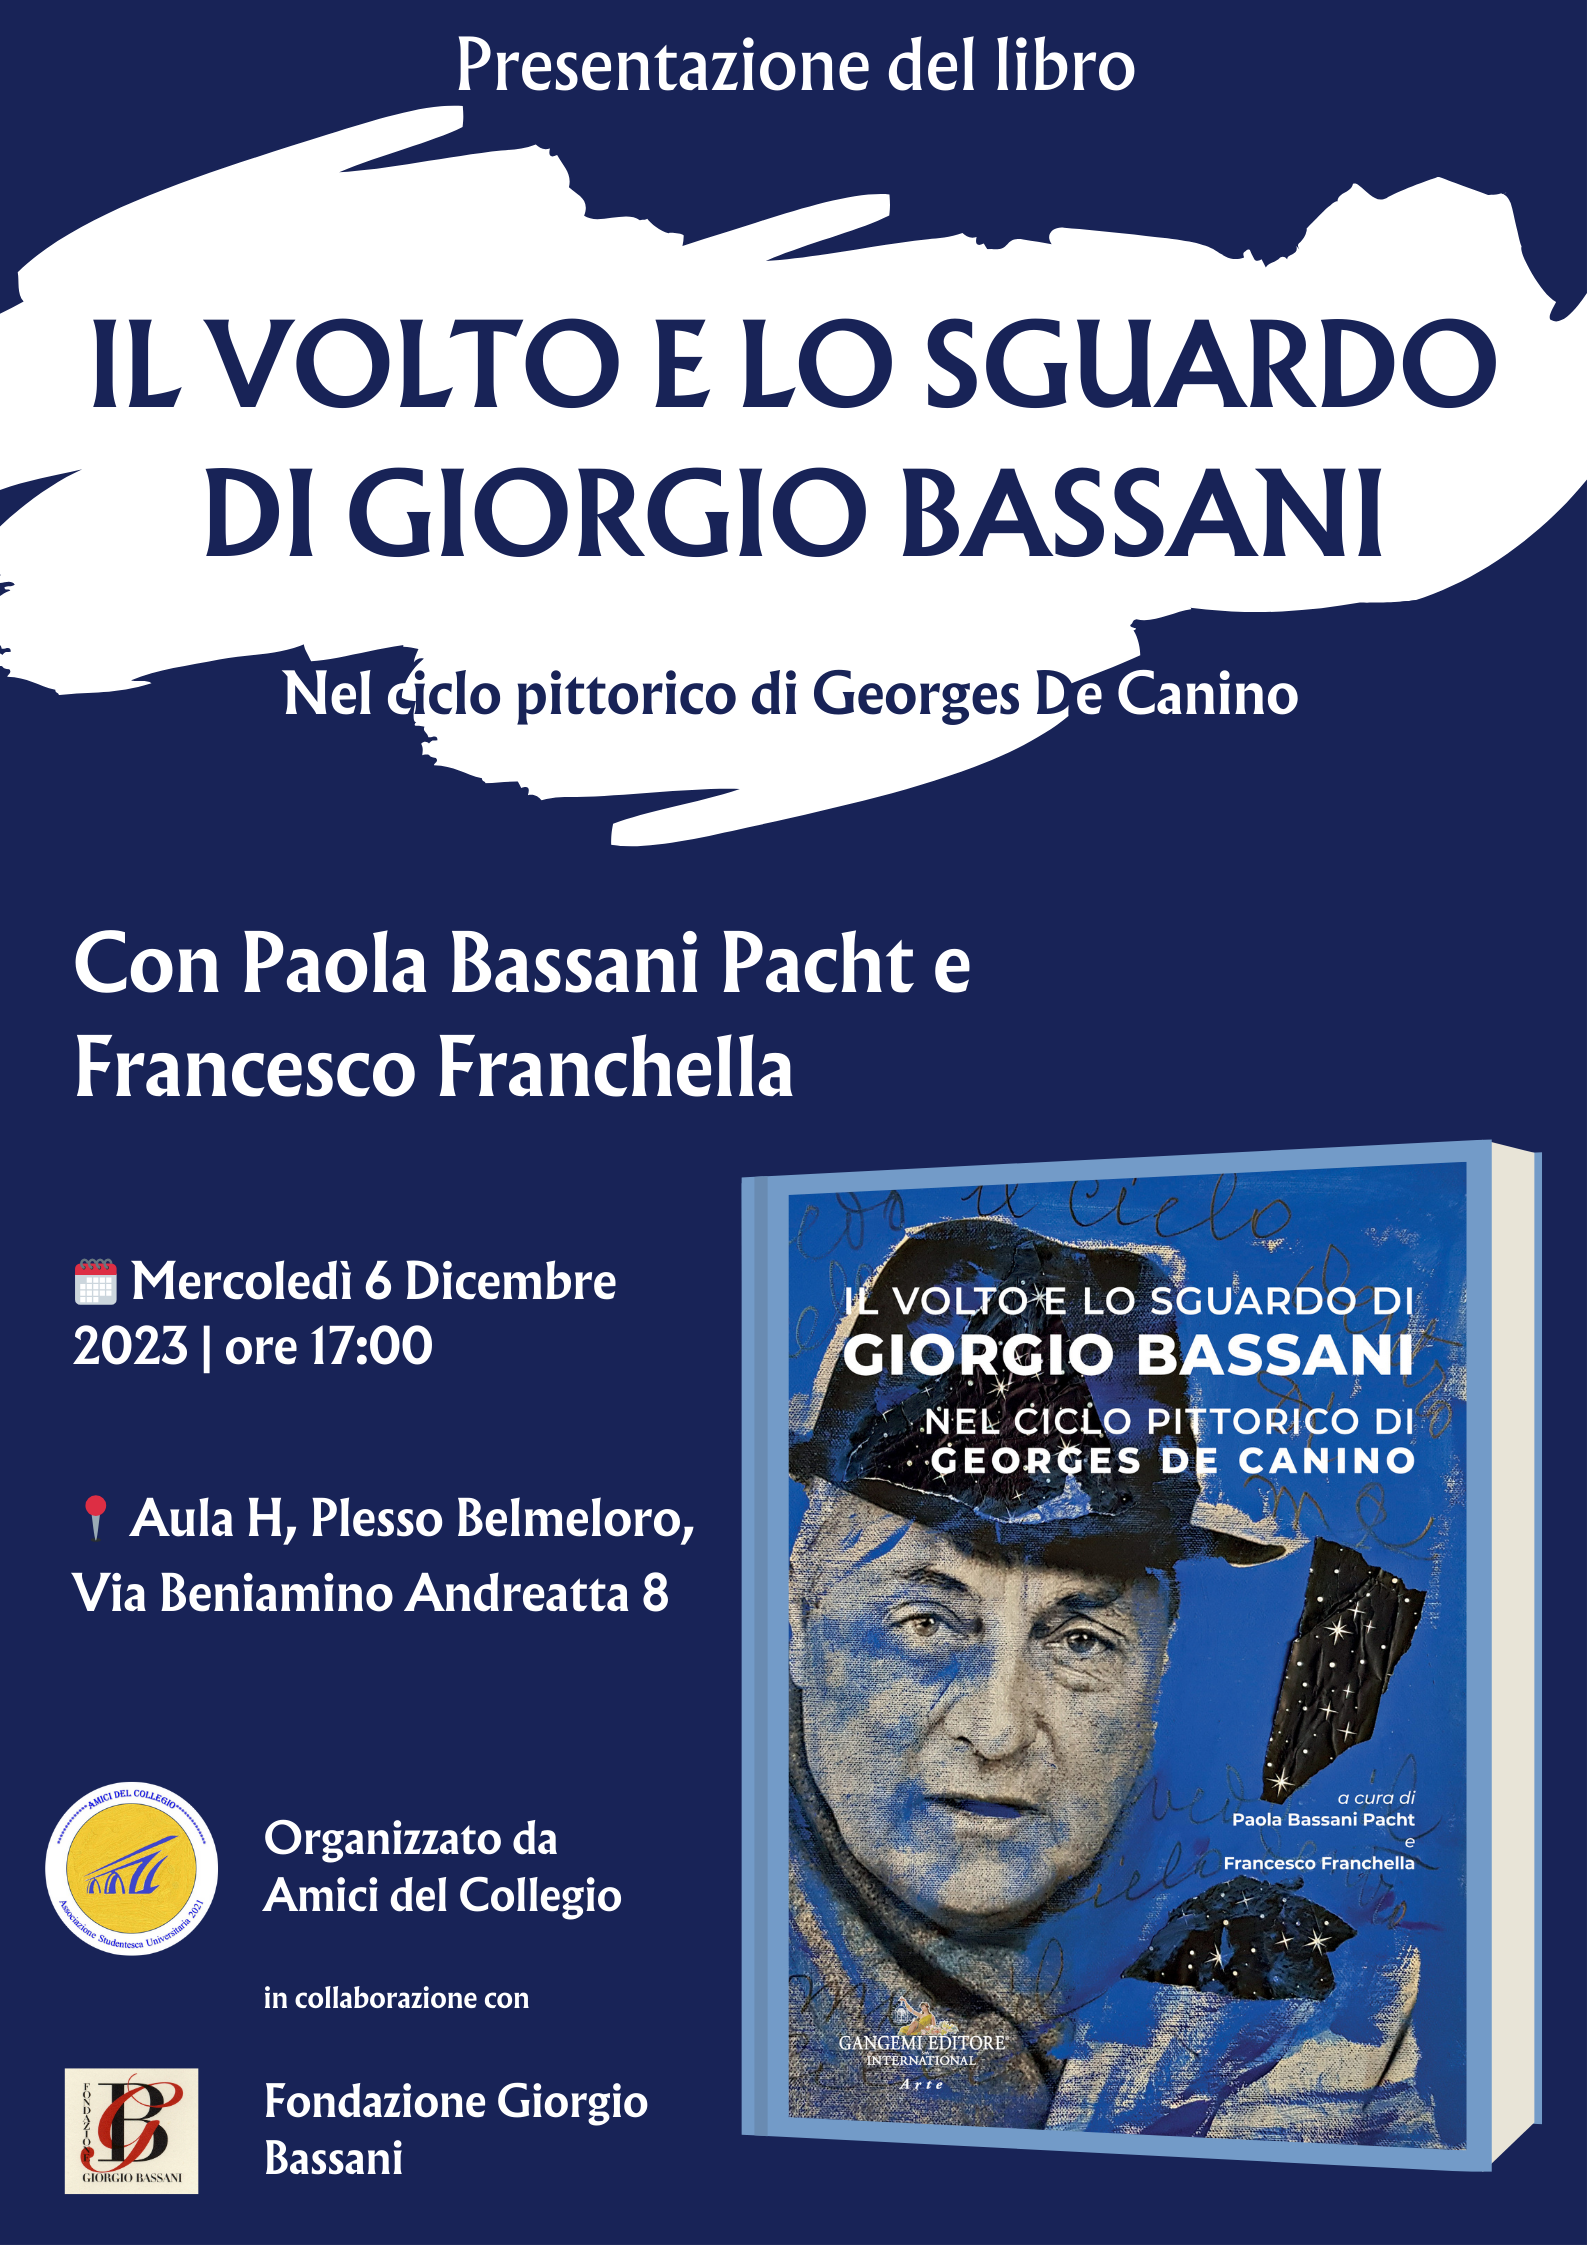 Evento - Il volto e lo sguardo di Giorgio Bassani